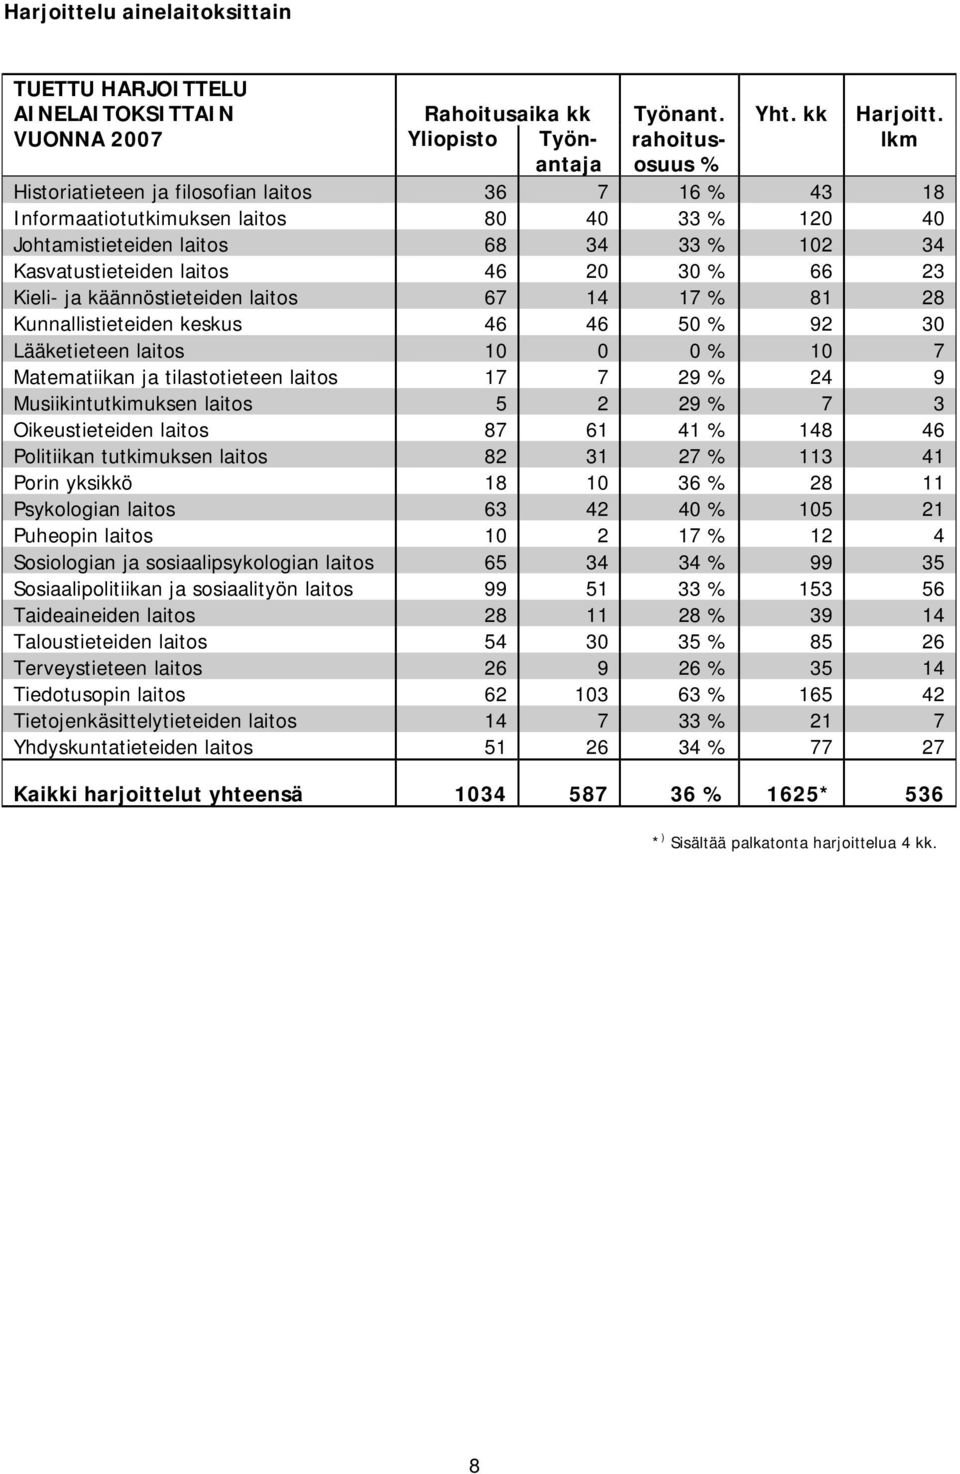 Kasvatustieteiden laitos 46 20 30 % 66 23 Kieli- ja käännöstieteiden laitos 67 14 17 % 81 28 Kunnallistieteiden keskus 46 46 50 % 92 30 Lääketieteen laitos 10 0 0 % 10 7 Matematiikan ja